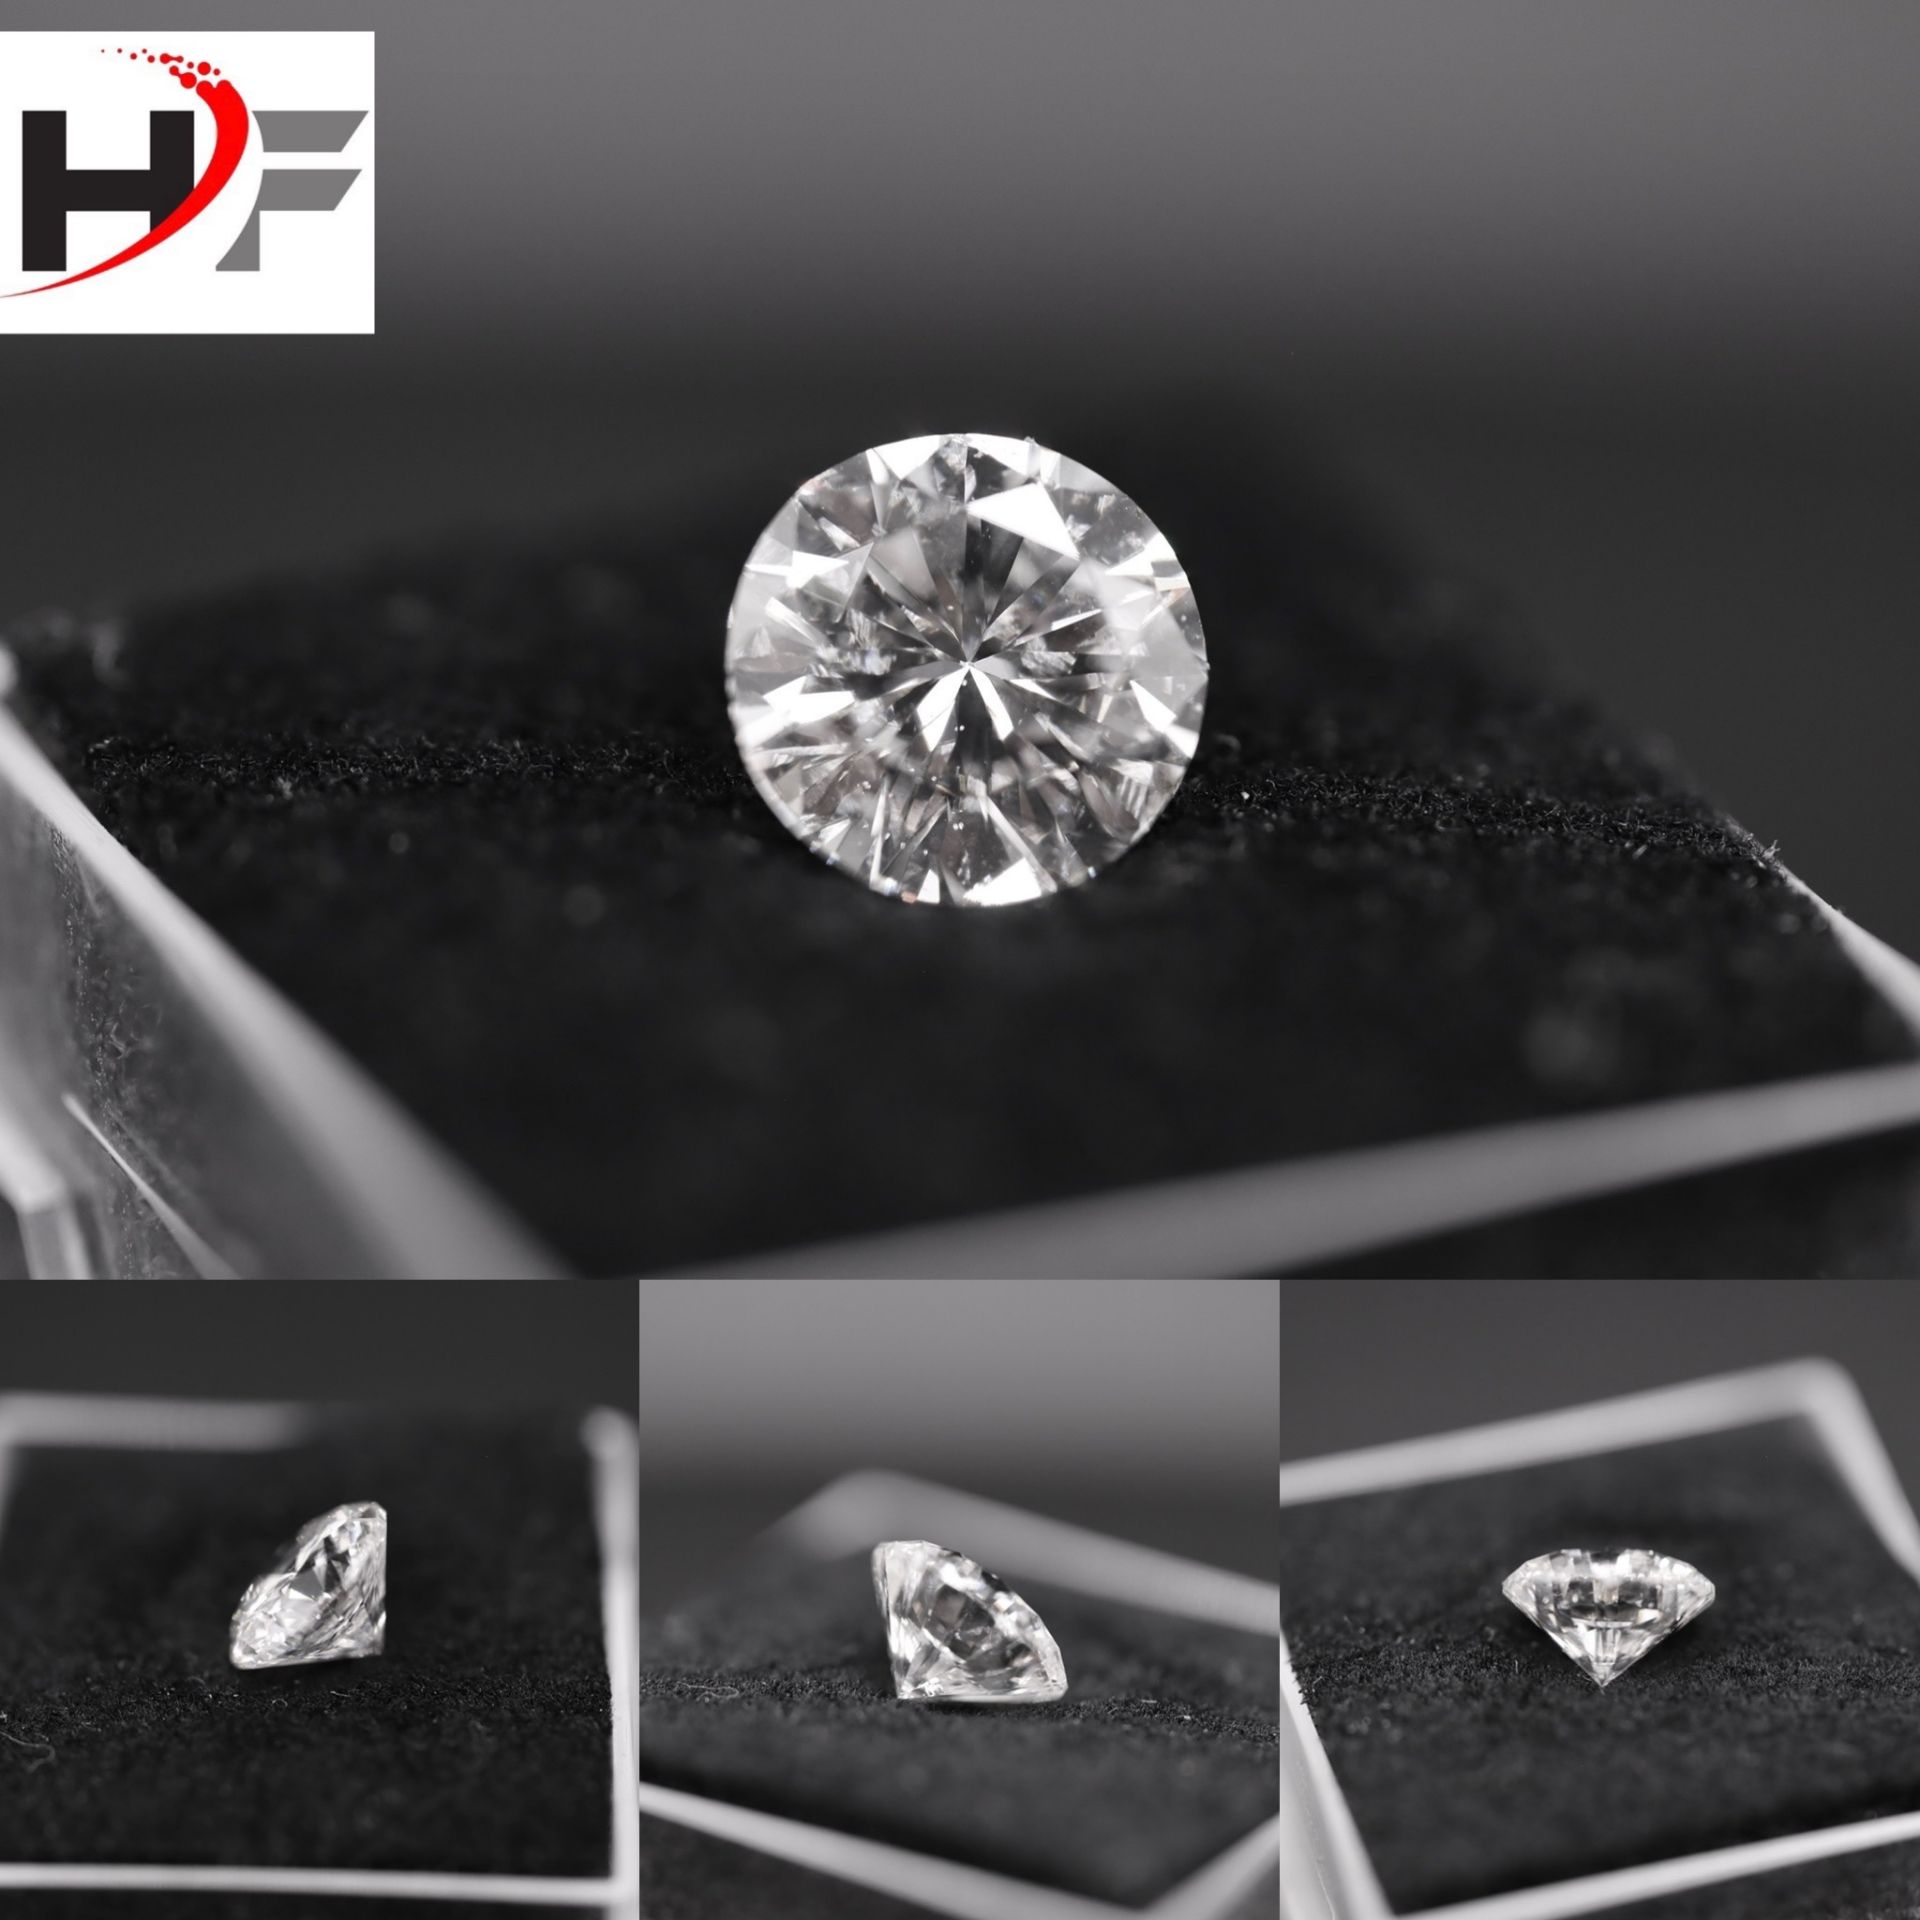 ** ON SALE ** Round Brilliant Cut Natural Diamond 2.00 Carat Colour E Clarity VS2 - AGI Certificate